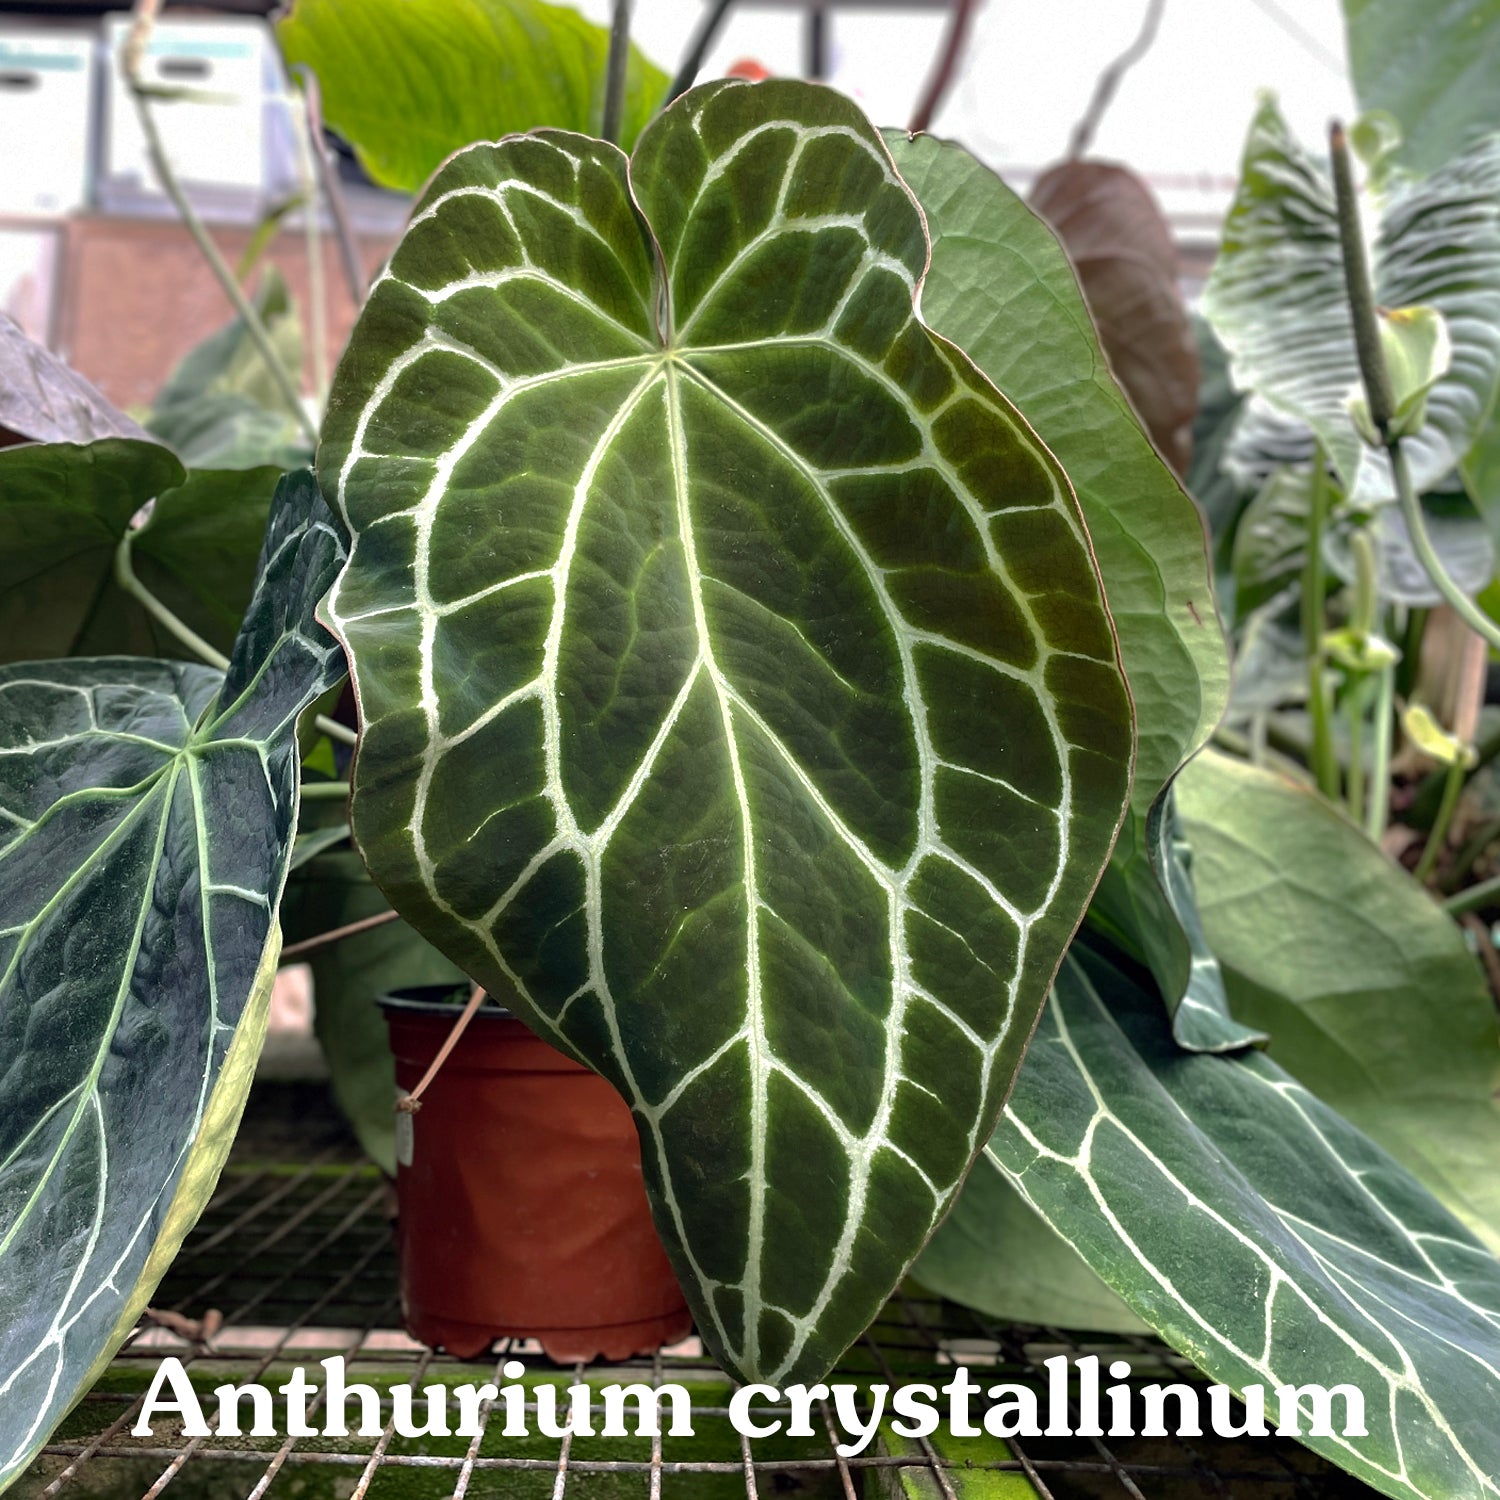 Anthurium crystallinum/magnificum x nigrolaminum 'Gigi'